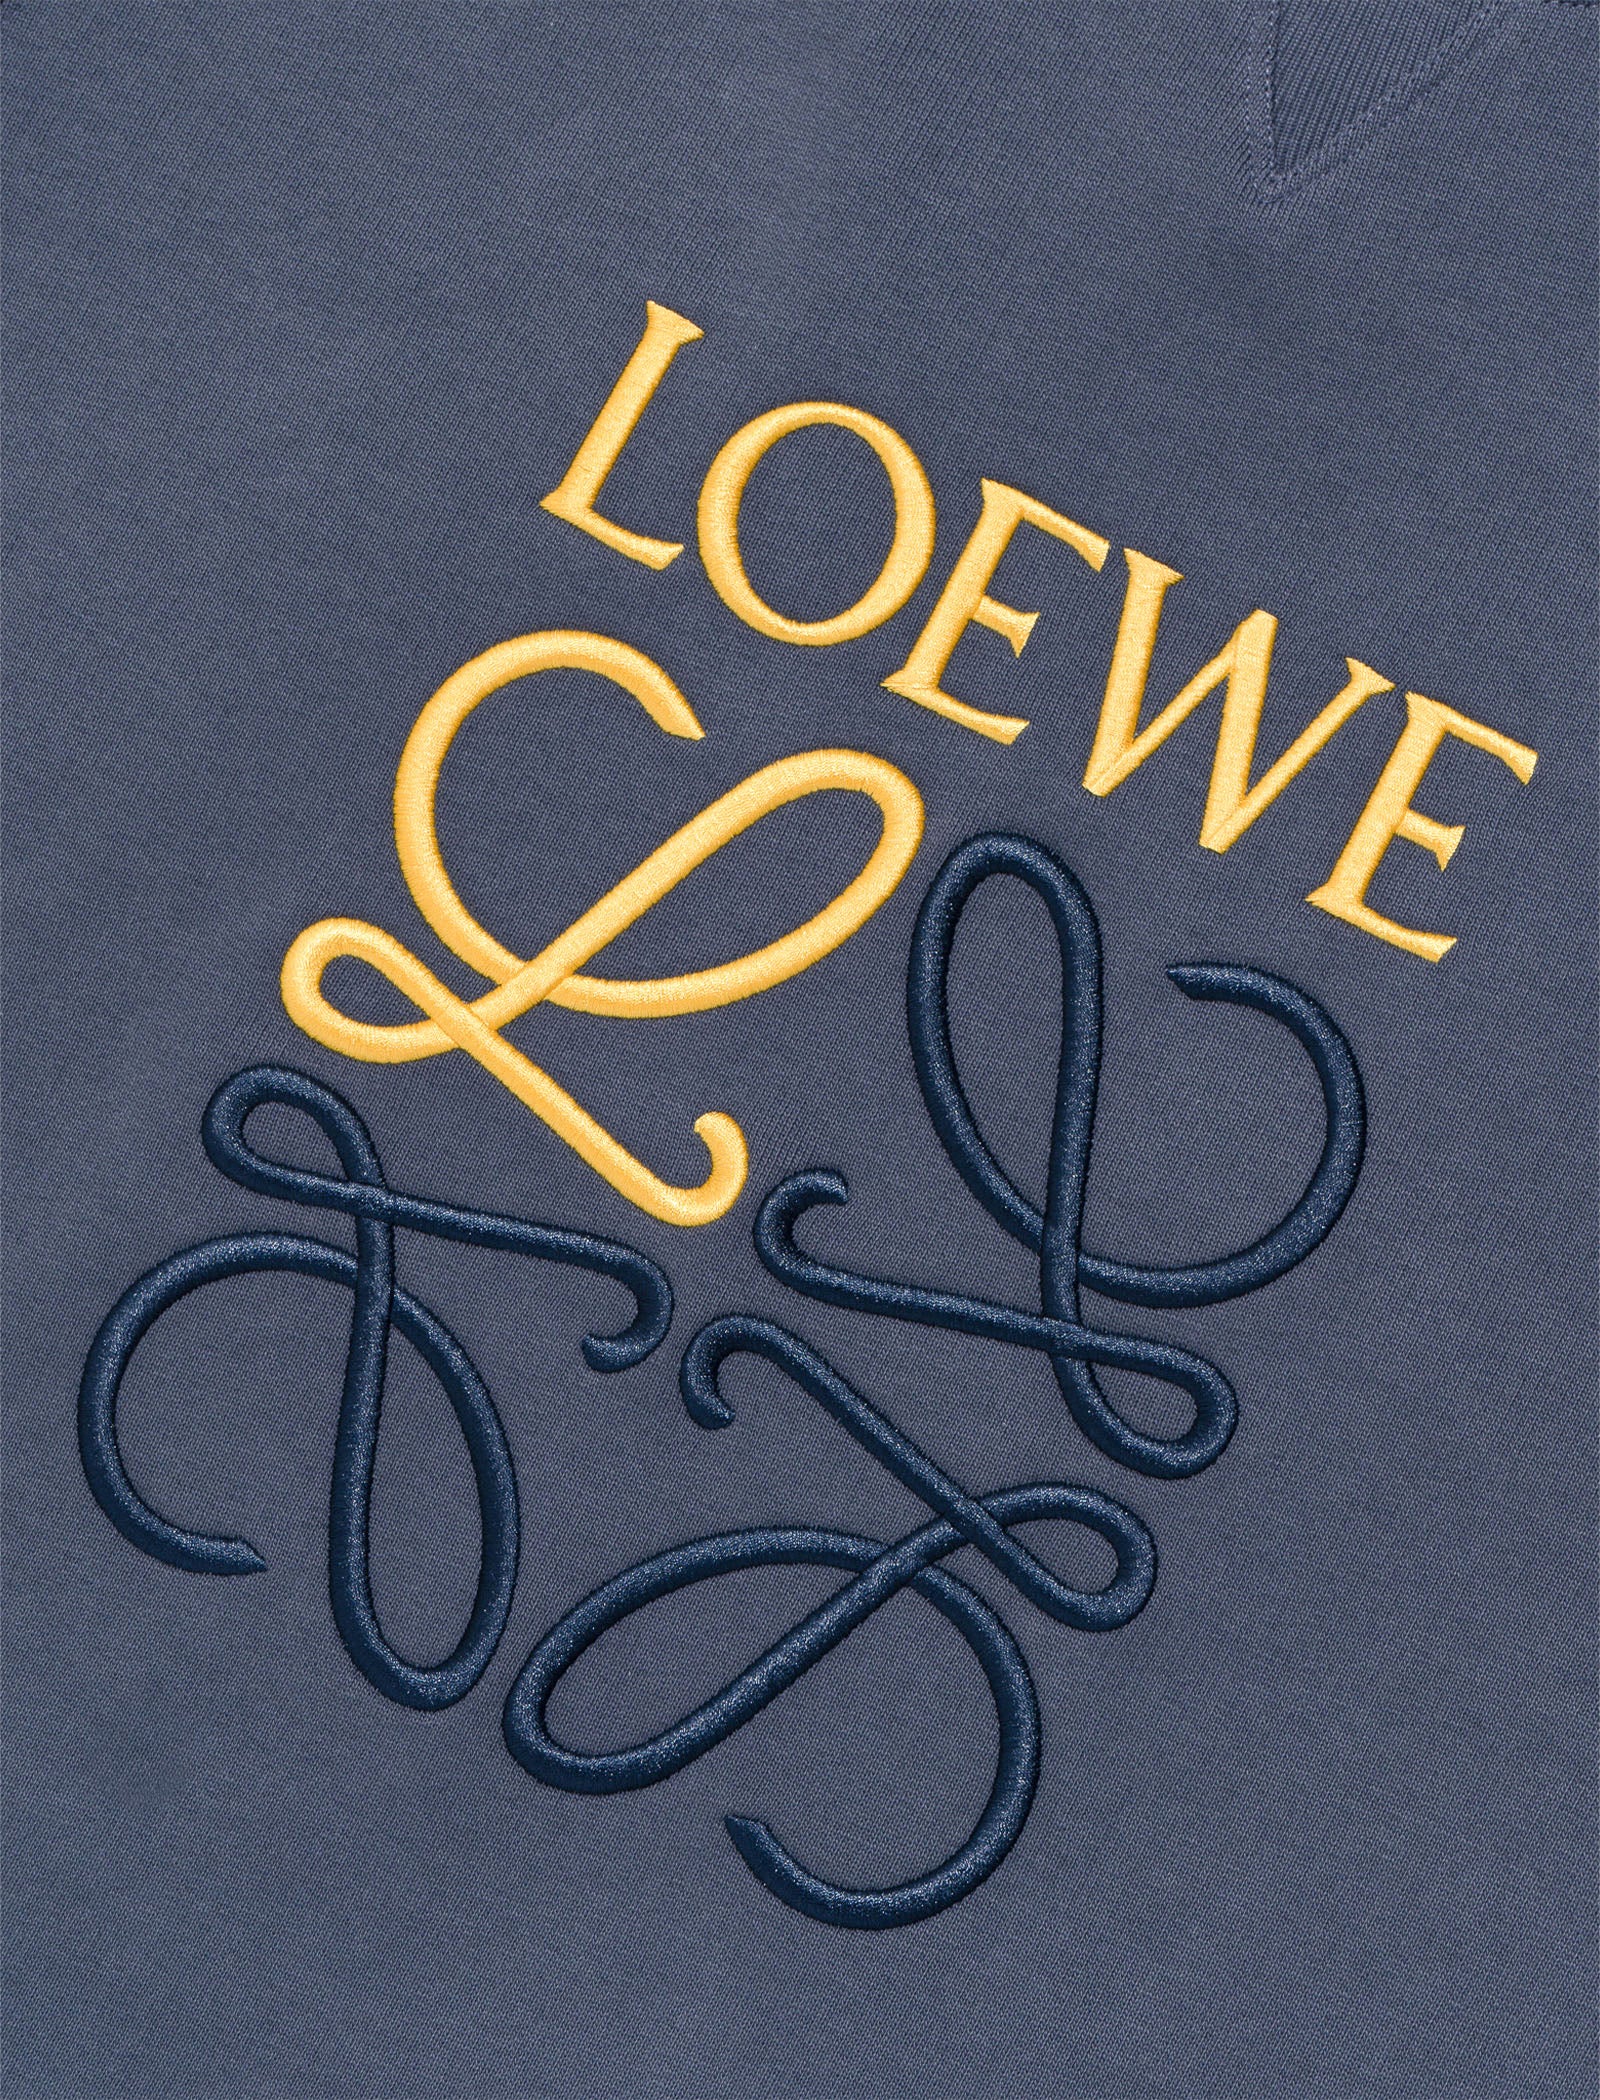 LOEWE Logo-Embroidered Sweatshirt